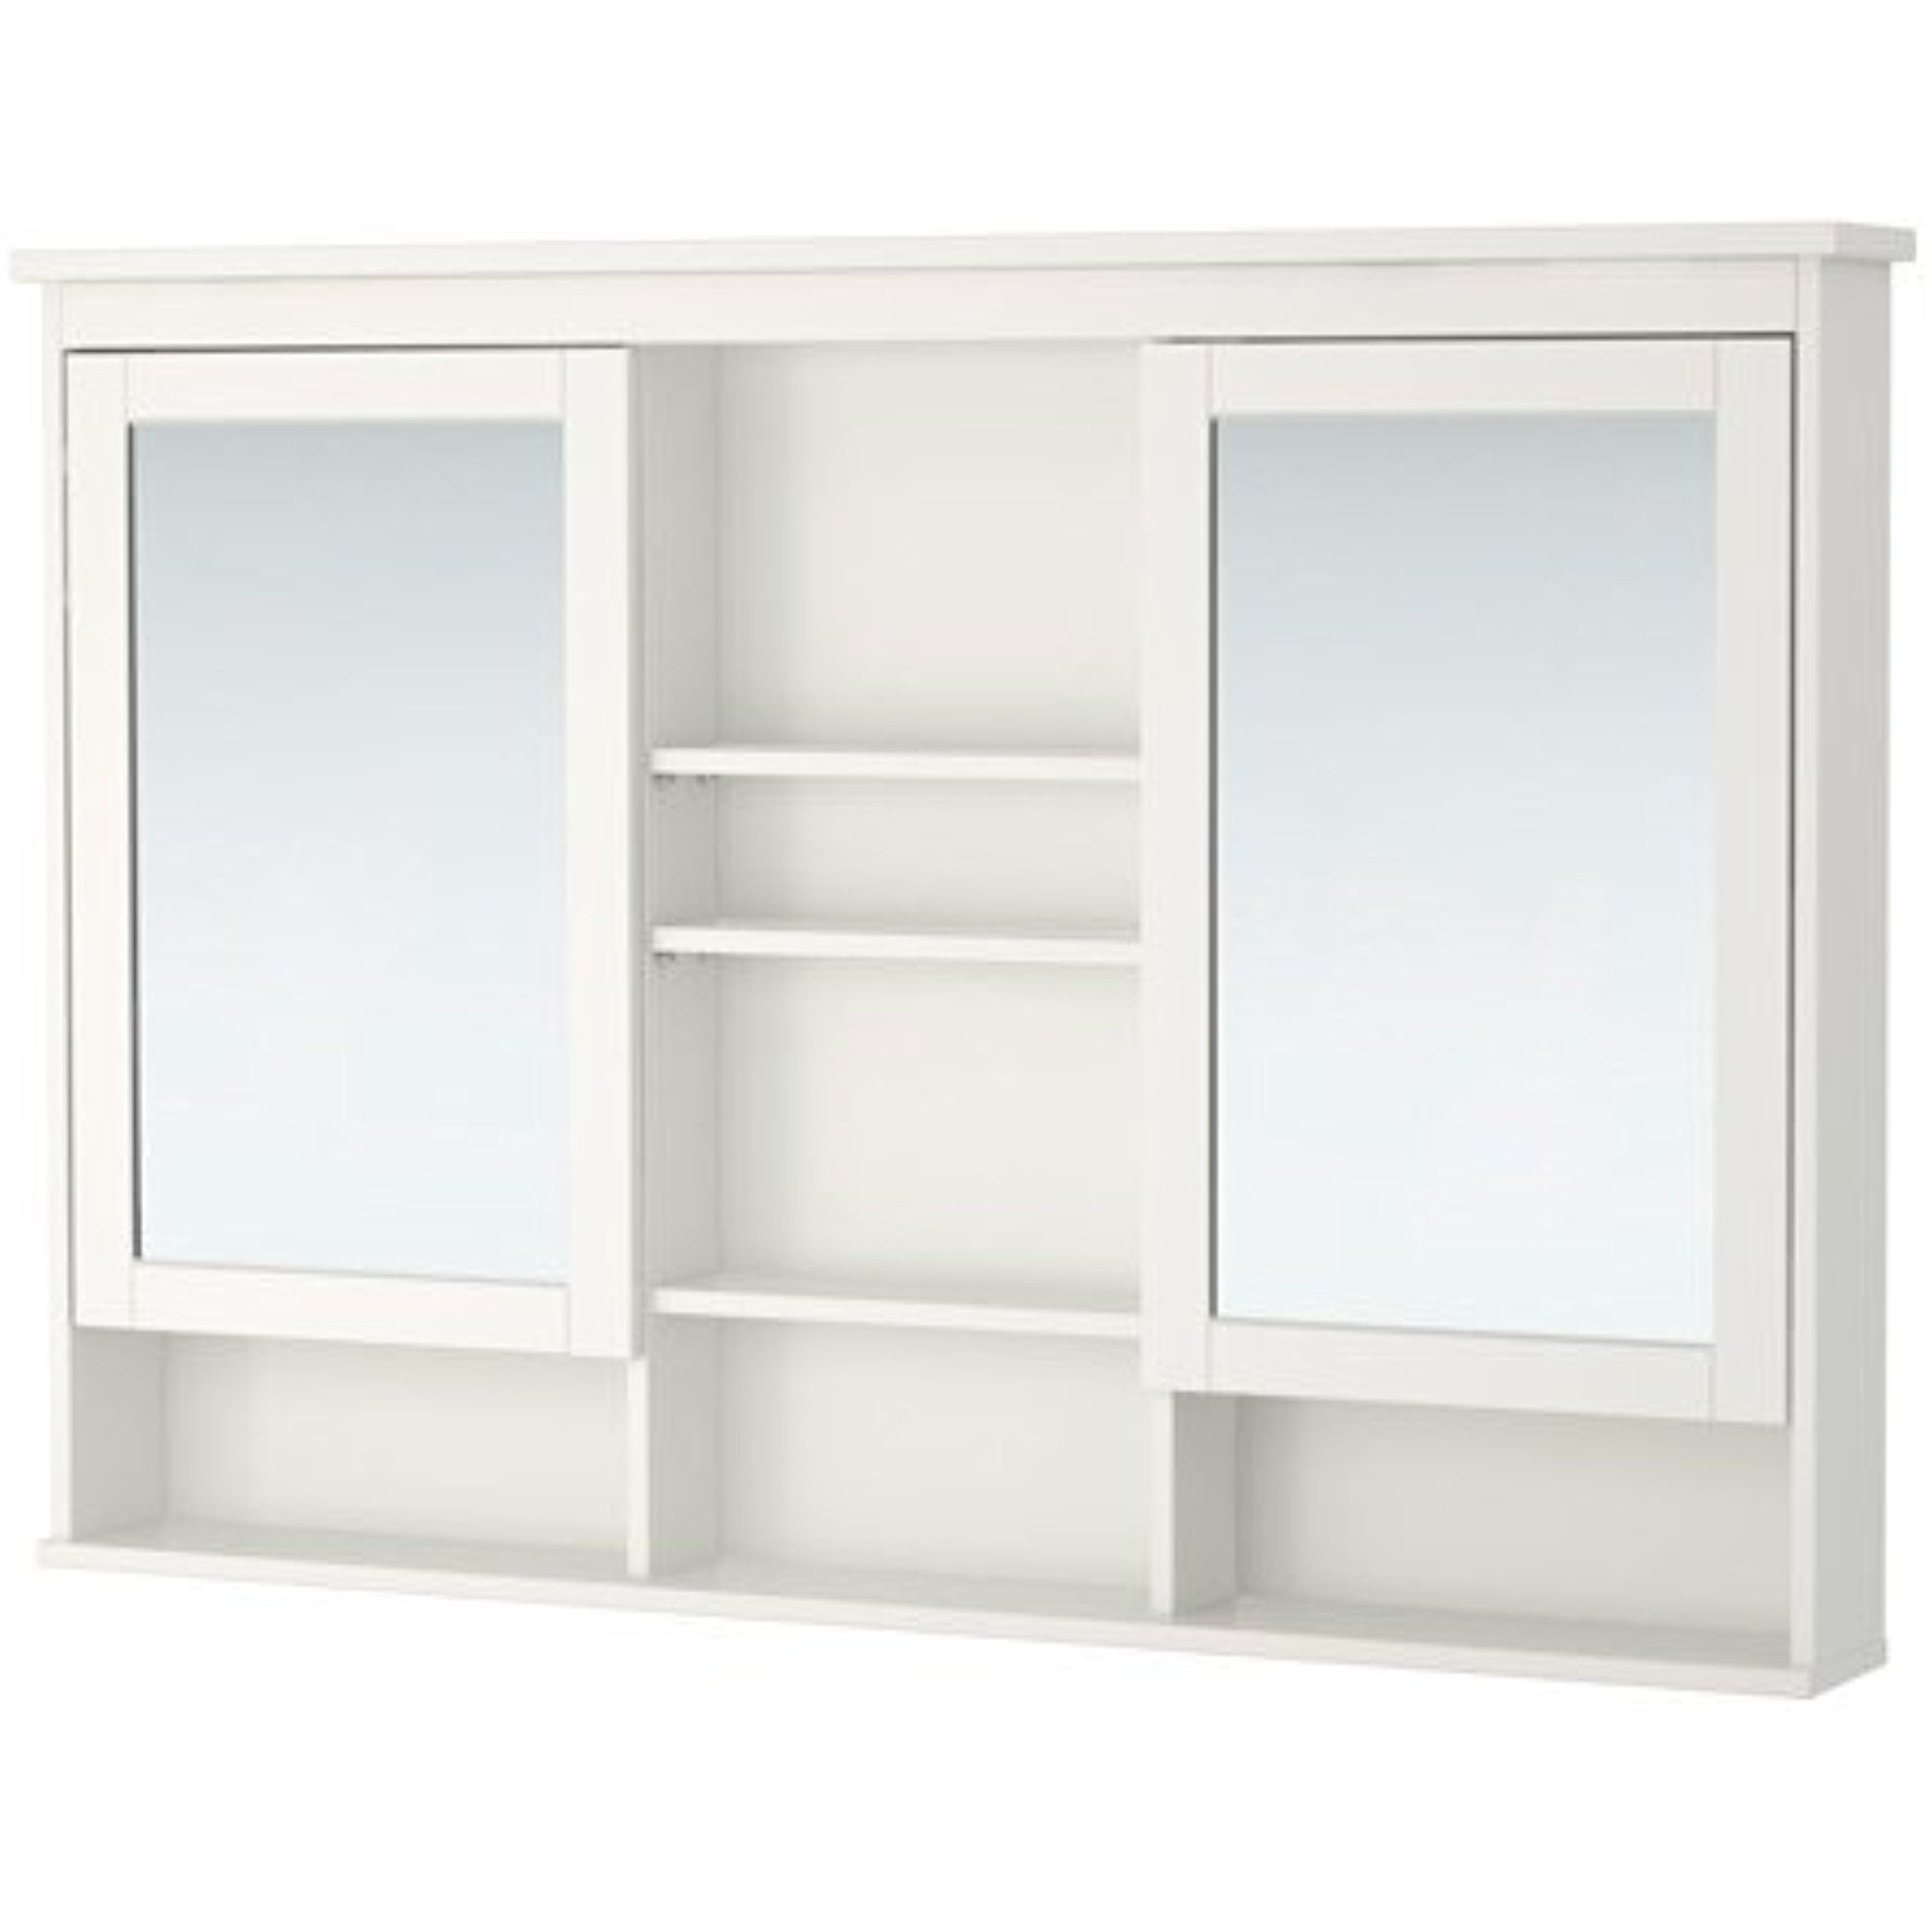 Luiheid Kracht Honderd jaar Ikea Mirror cabinet with 2 doors, white 47 1/4x38 5/8 ", 26210.292623.108 -  Walmart.com